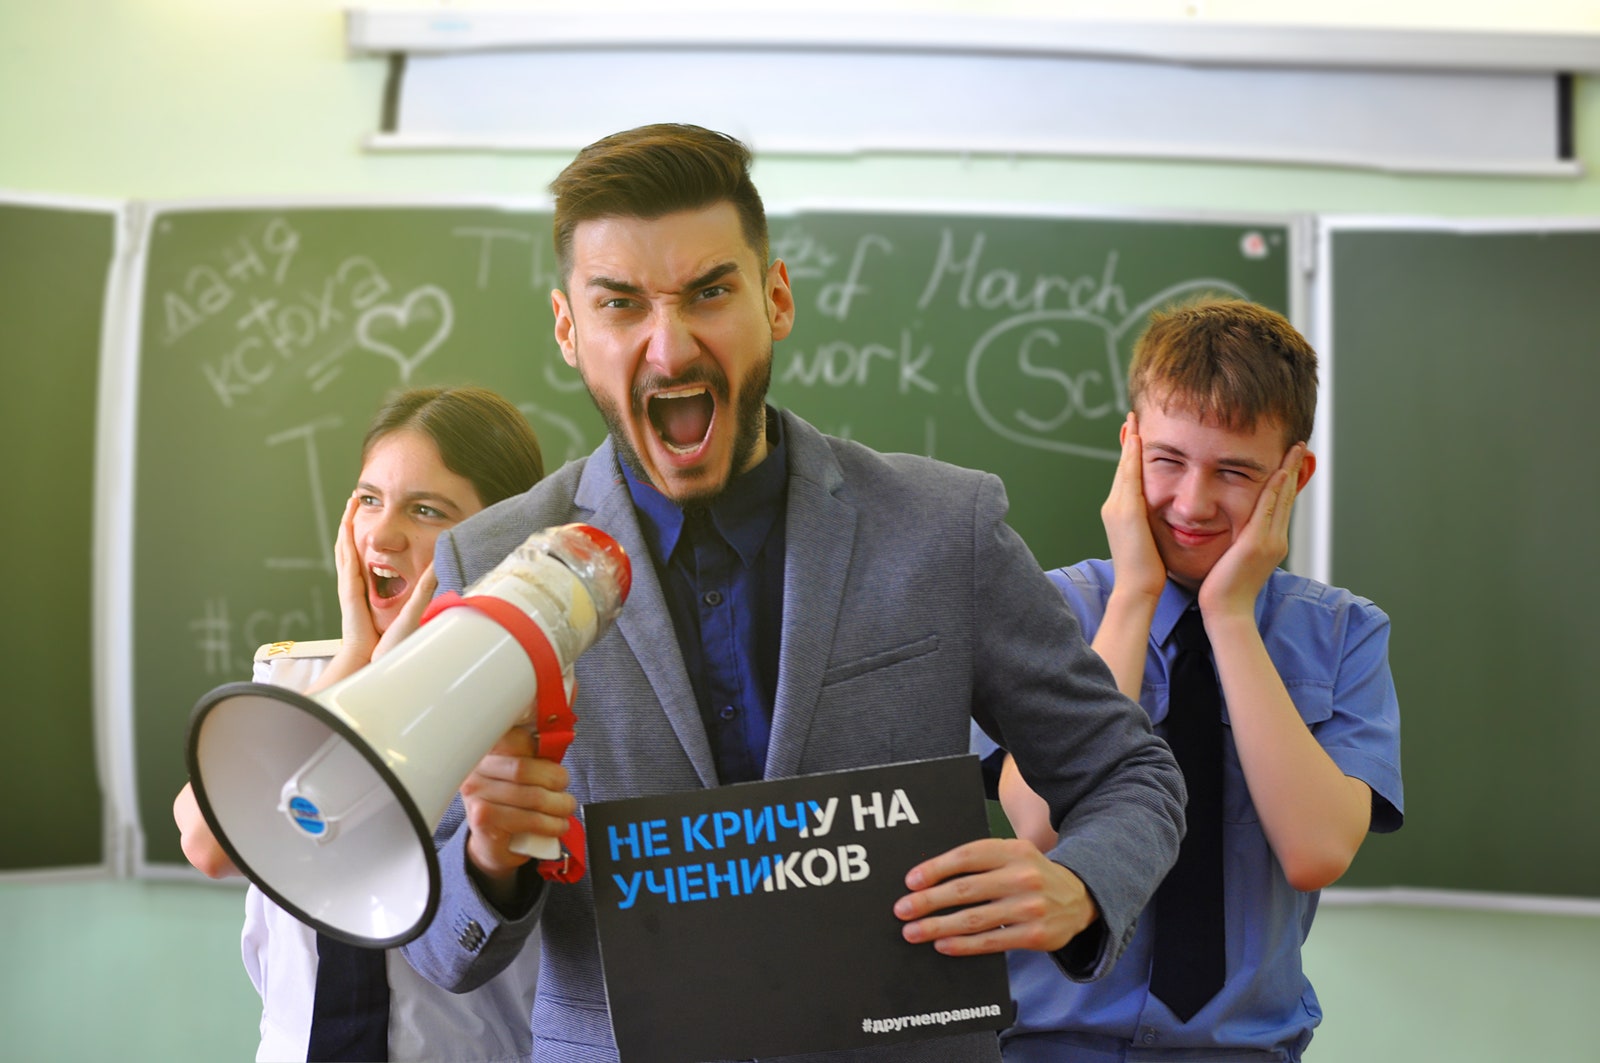 Звезда TikTok и учитель английского Андрей Федотов рассказал как стать популярным в TikTok